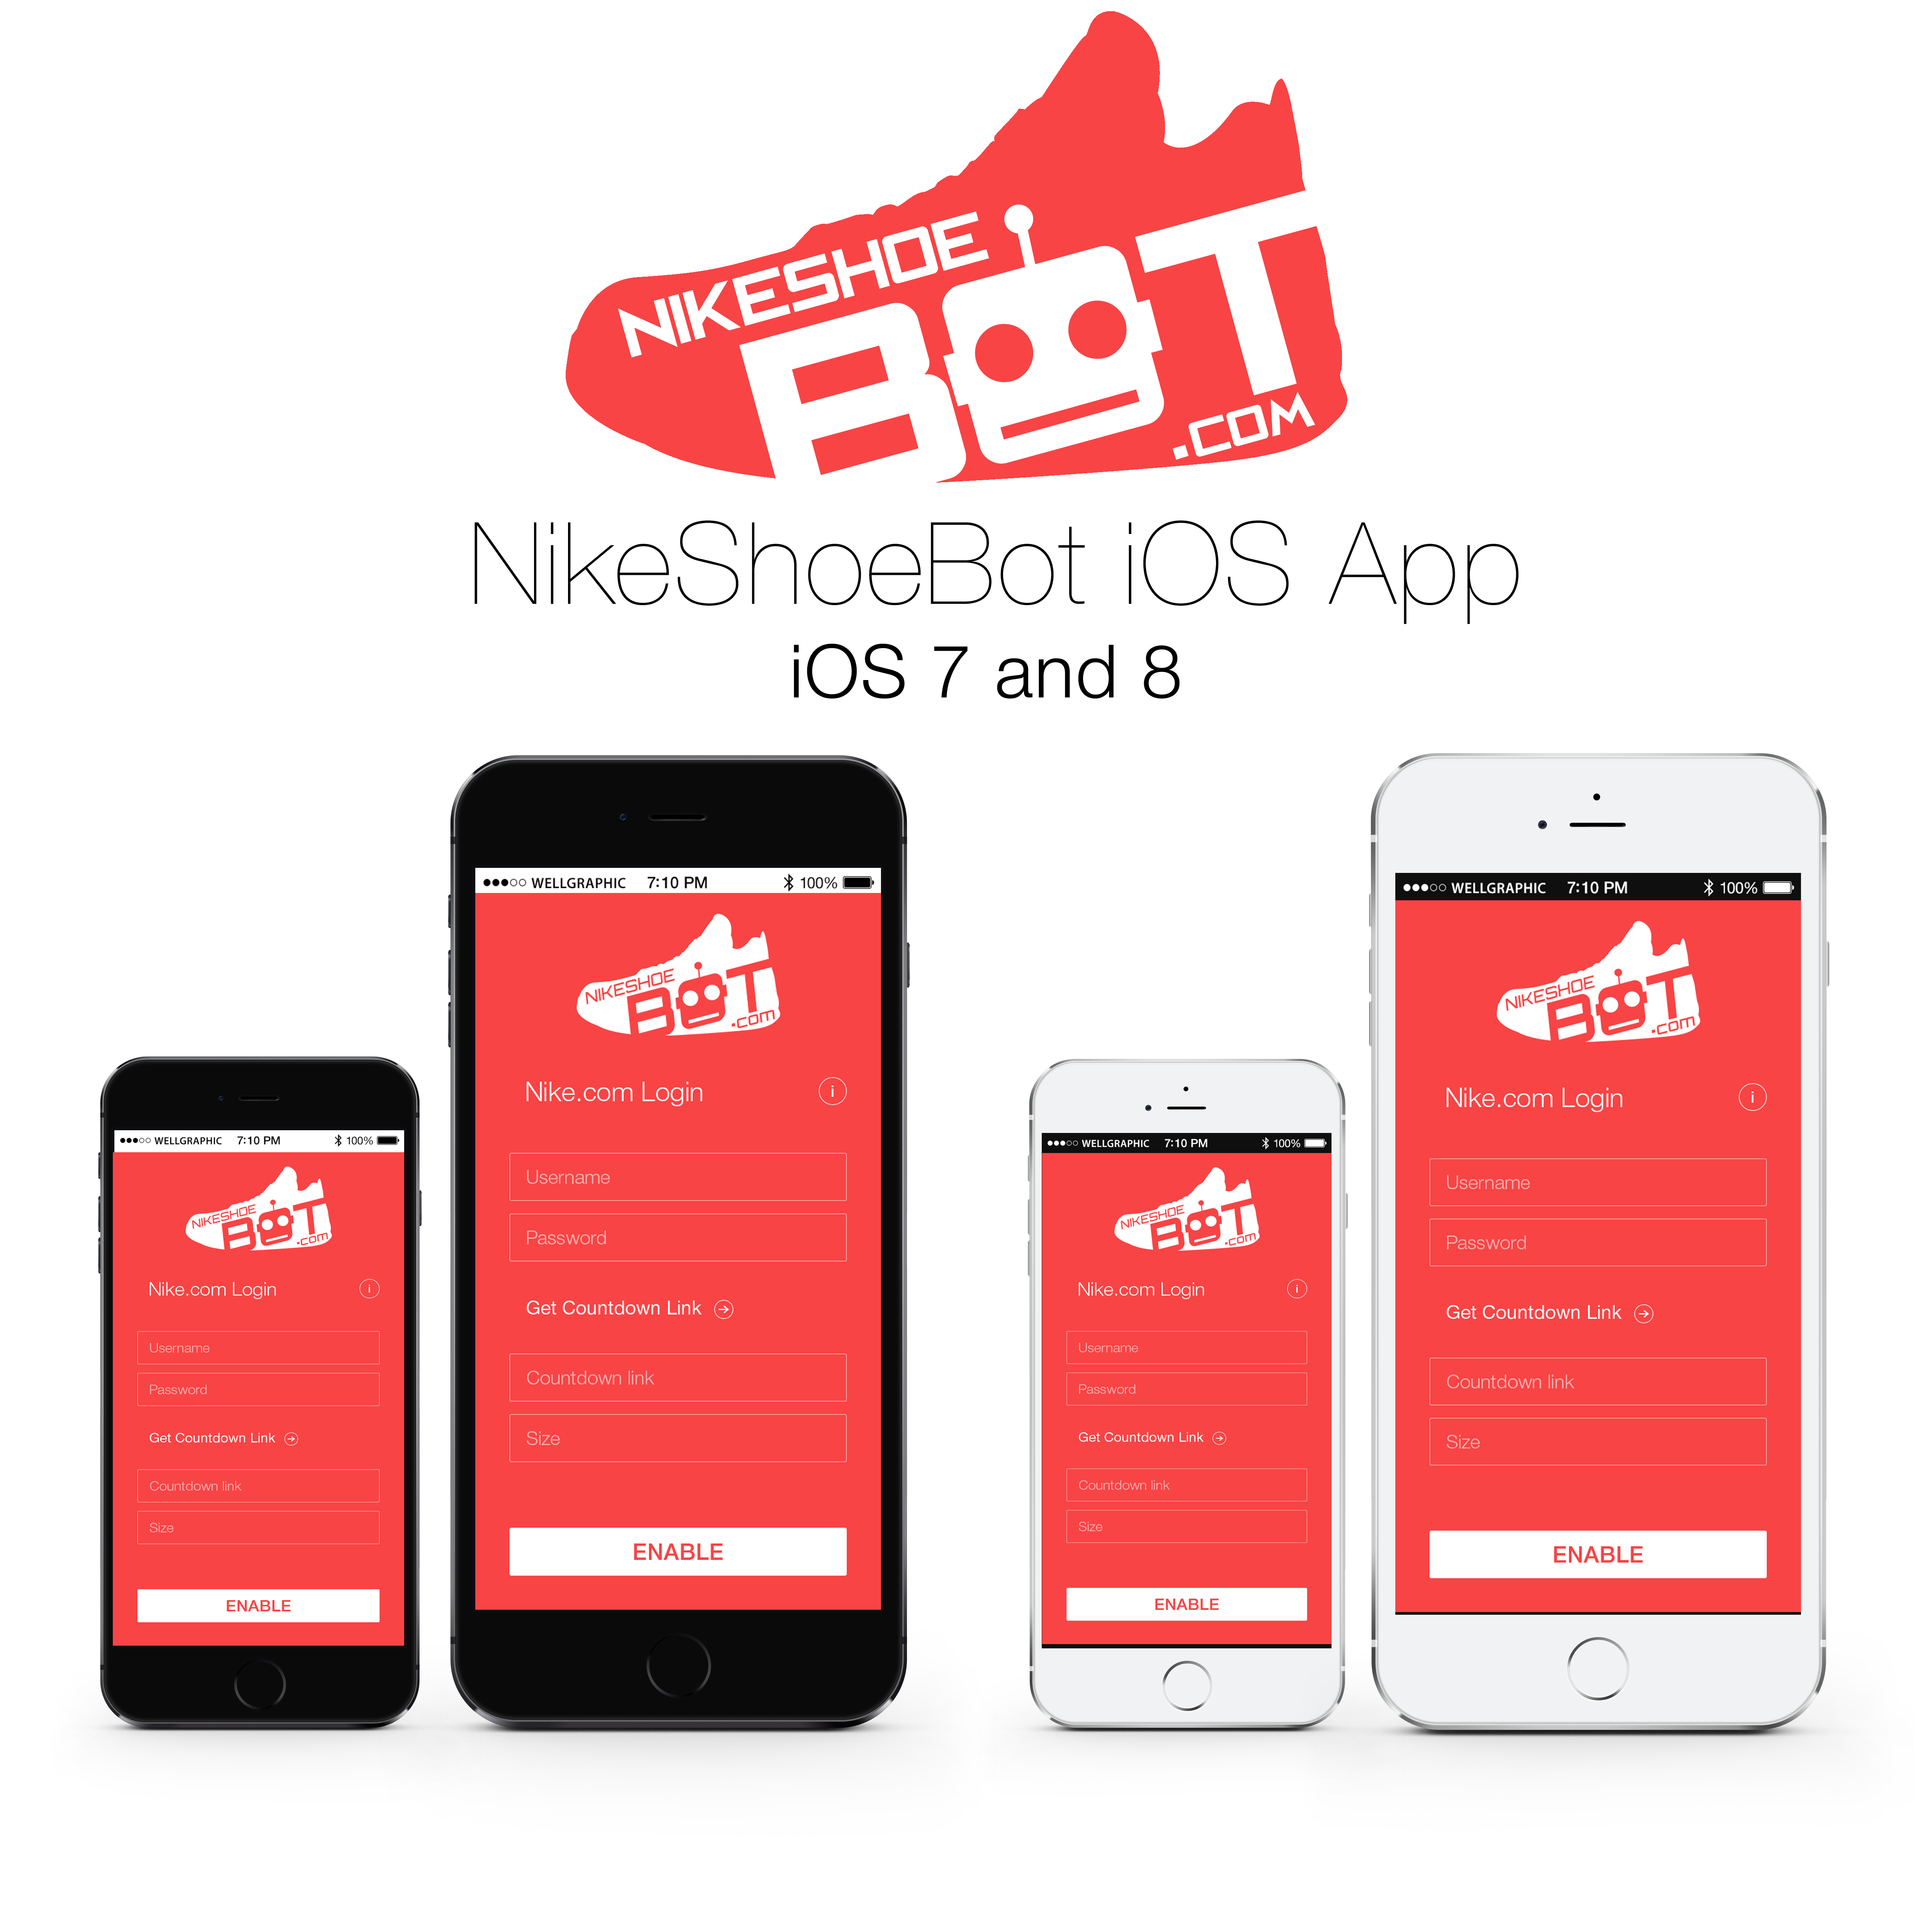 NikeShoeBot App | NikeShoeBot